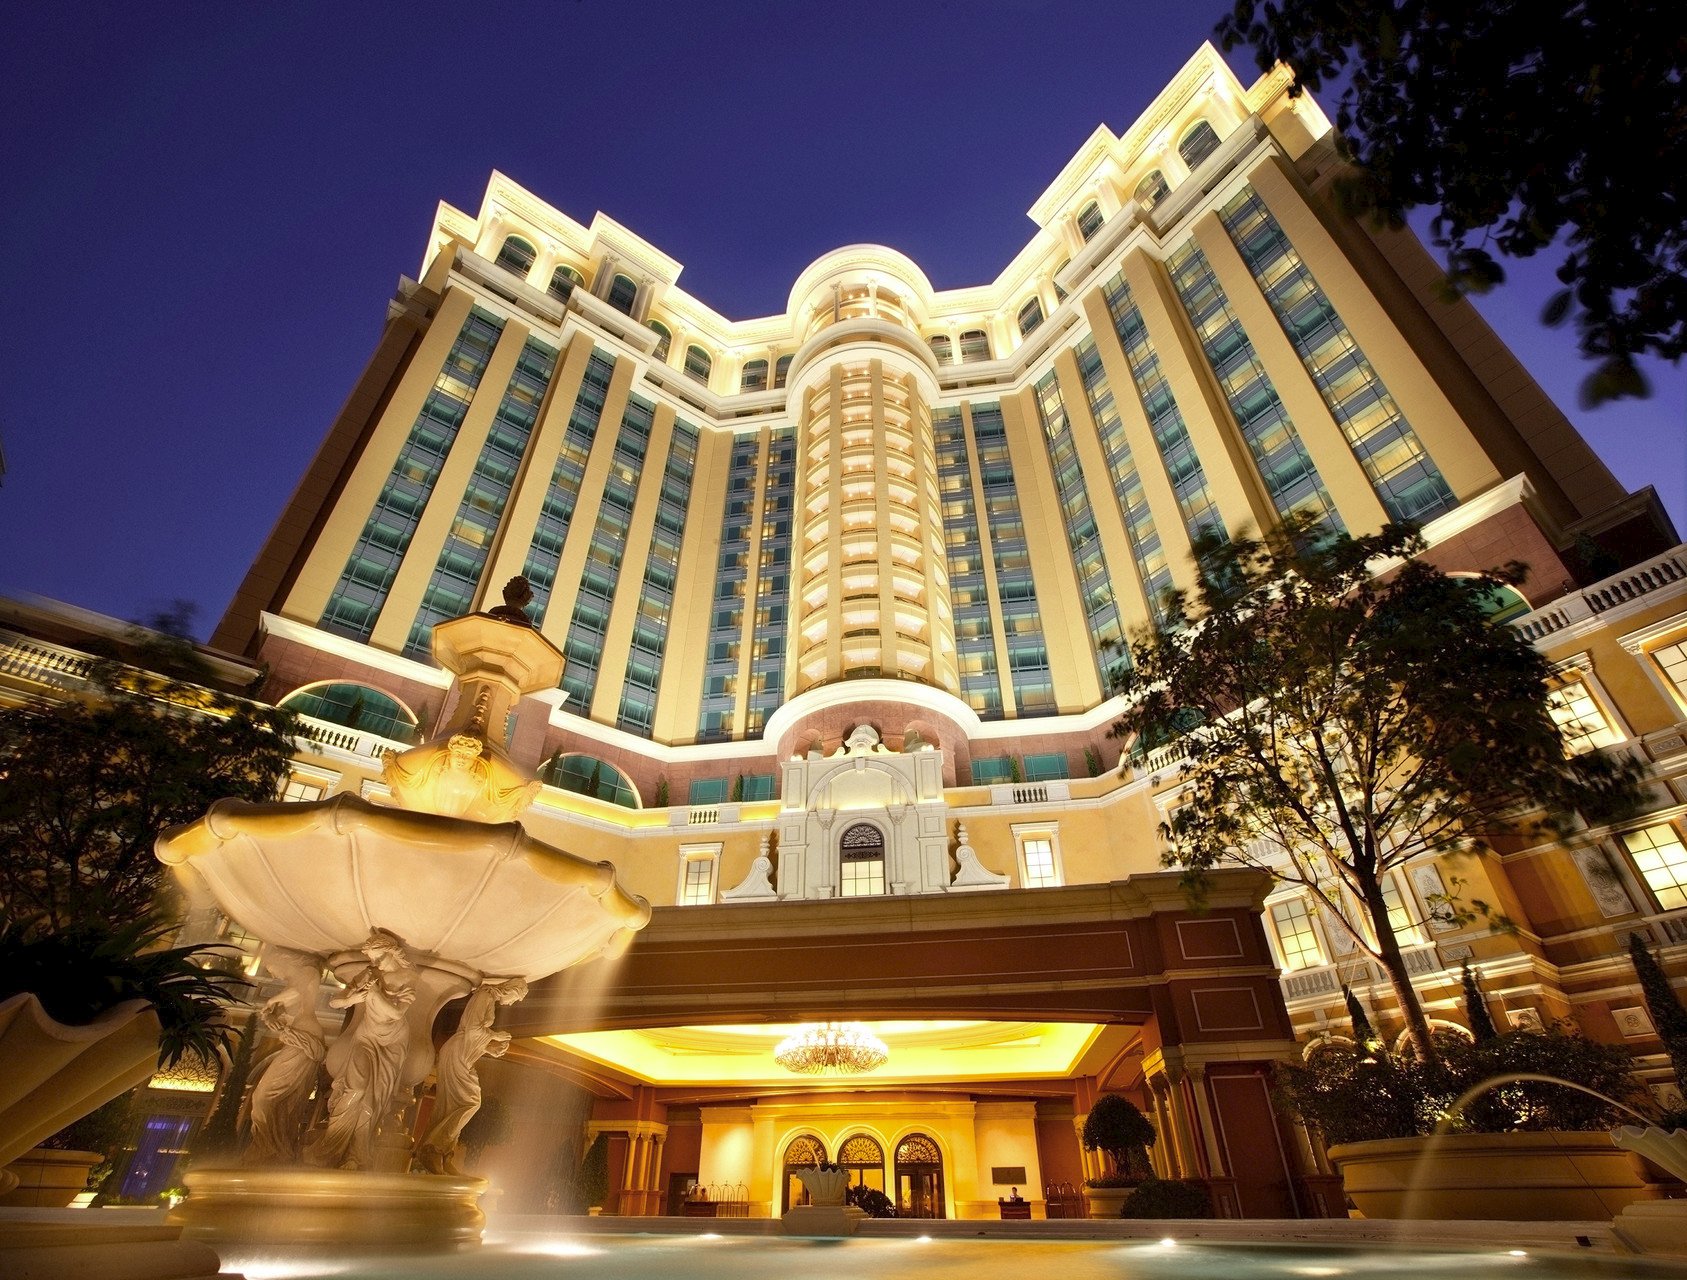 โรงแรมโฟร์ ซีซั่น มาเก๊า Four Seasons Hotel Macau